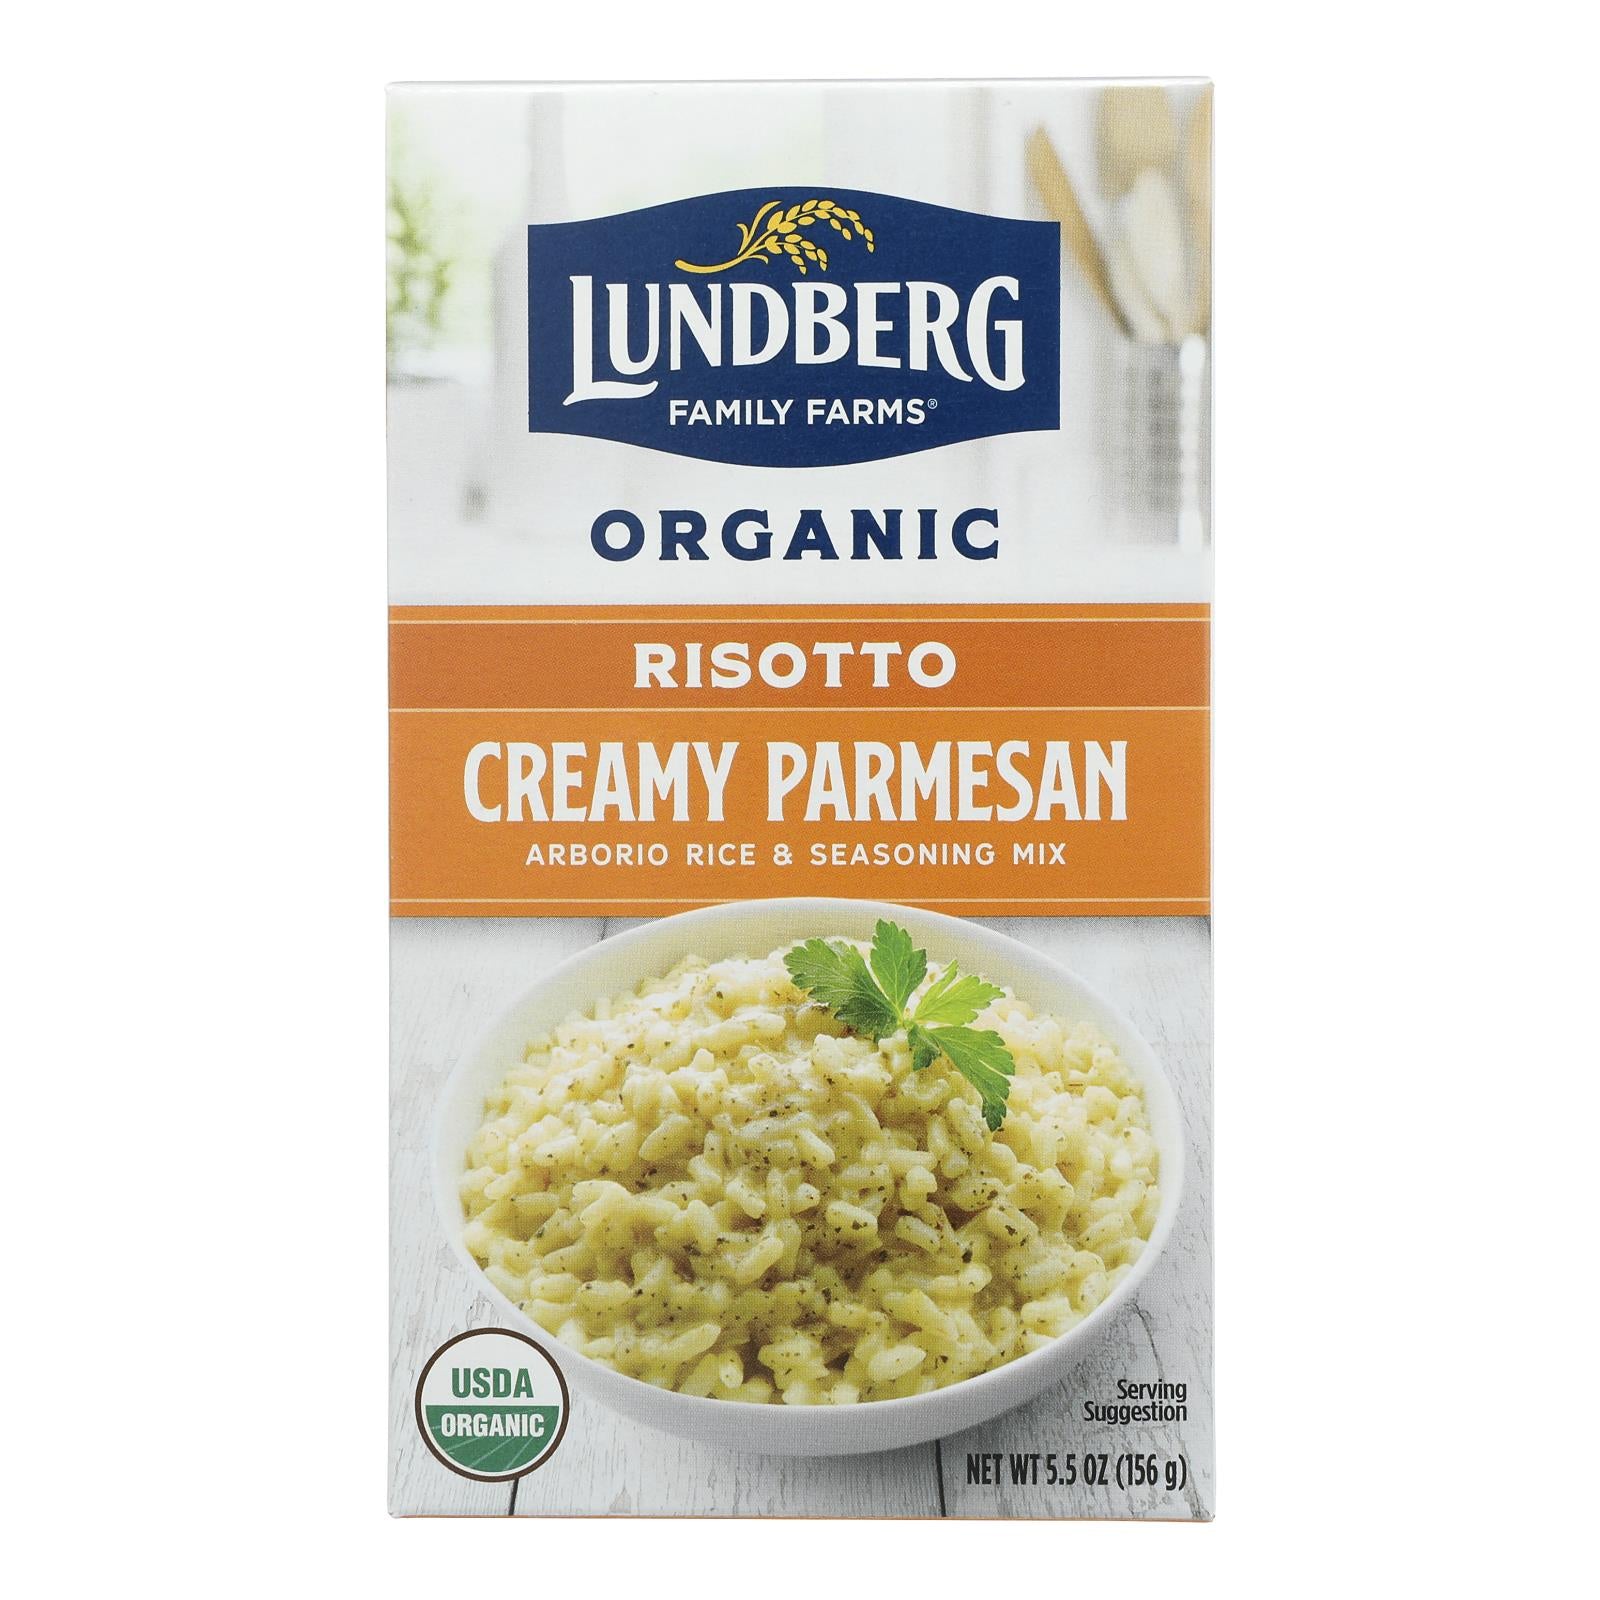 Lundberg Family Farms Organic Risotto - Creamy Parmesan - Case of 6 - 5.5 oz